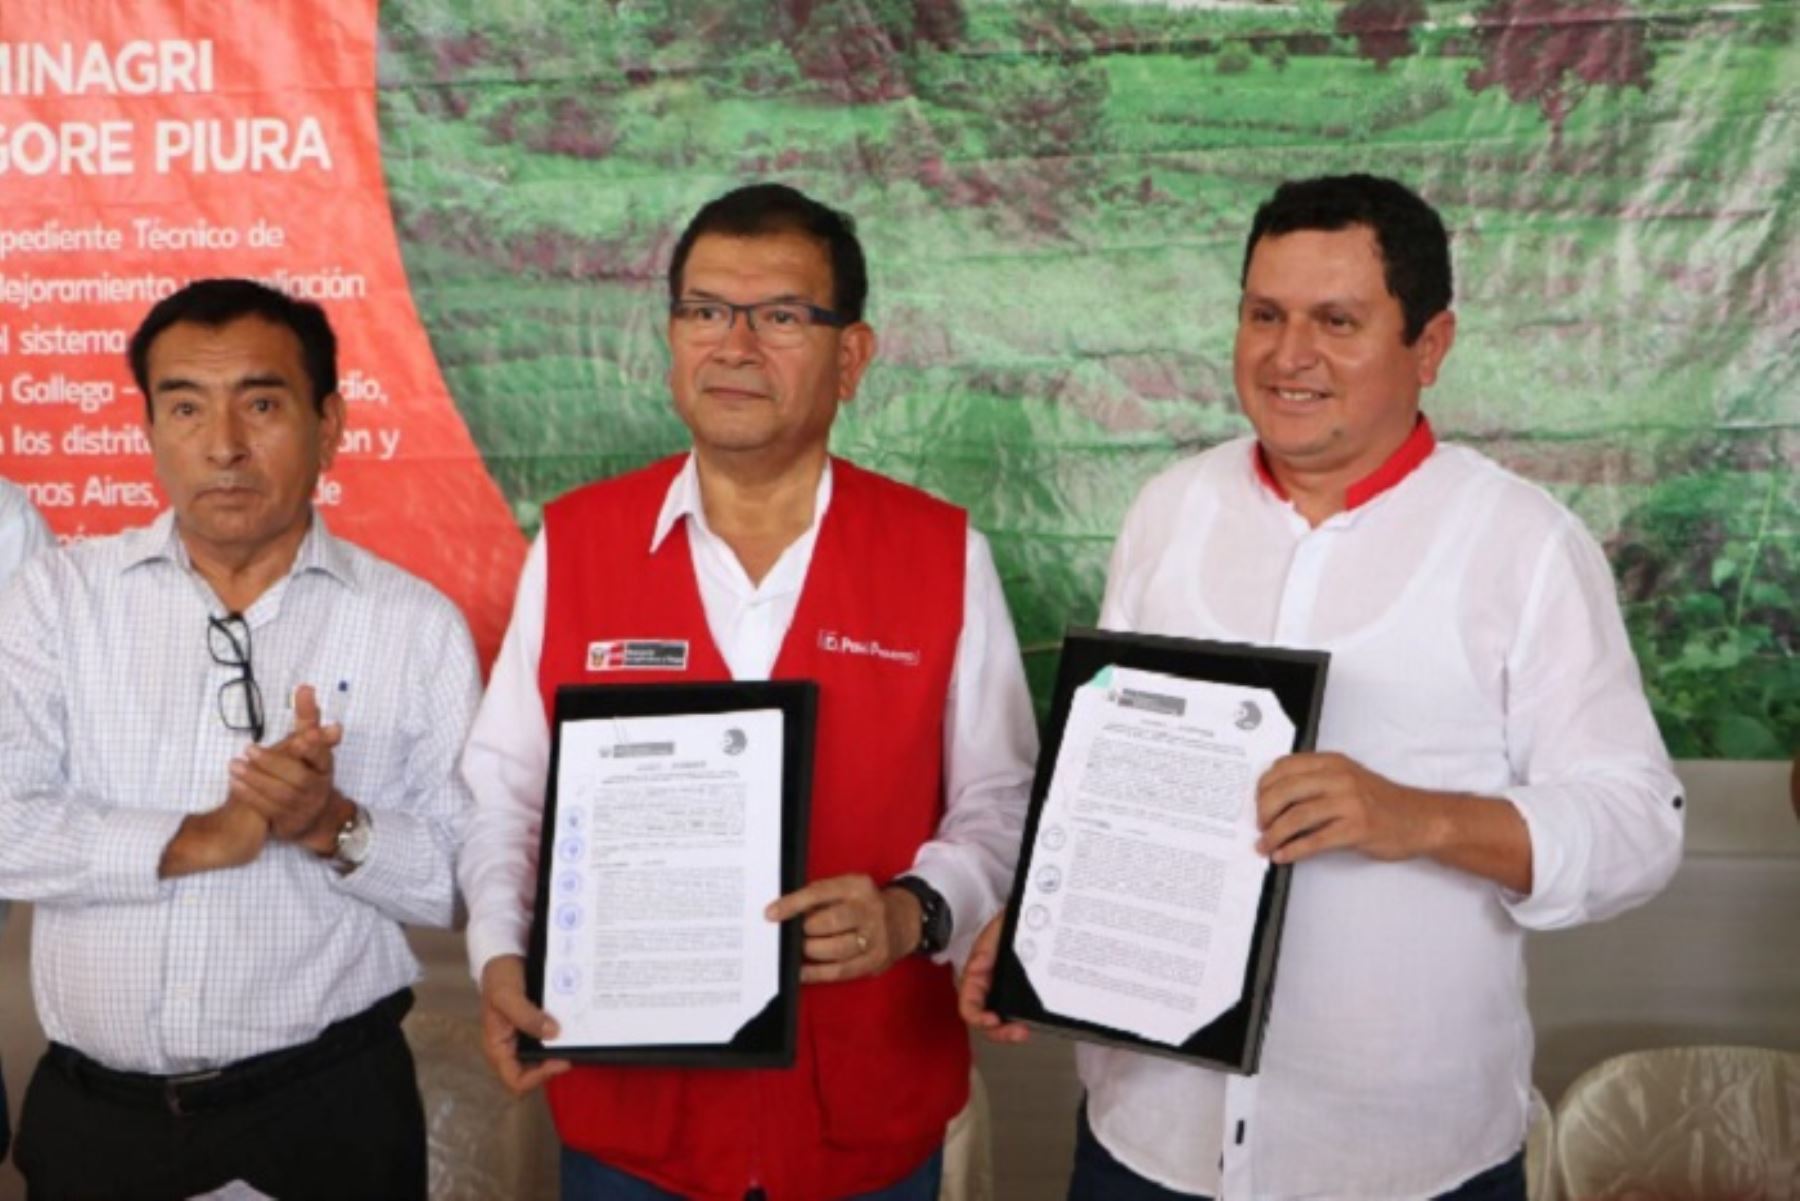 El acuerdo fue rubricado por el ministro de Agricultura, Jorge Montenegro, y el  gobernador regional de Piura, Servando García.